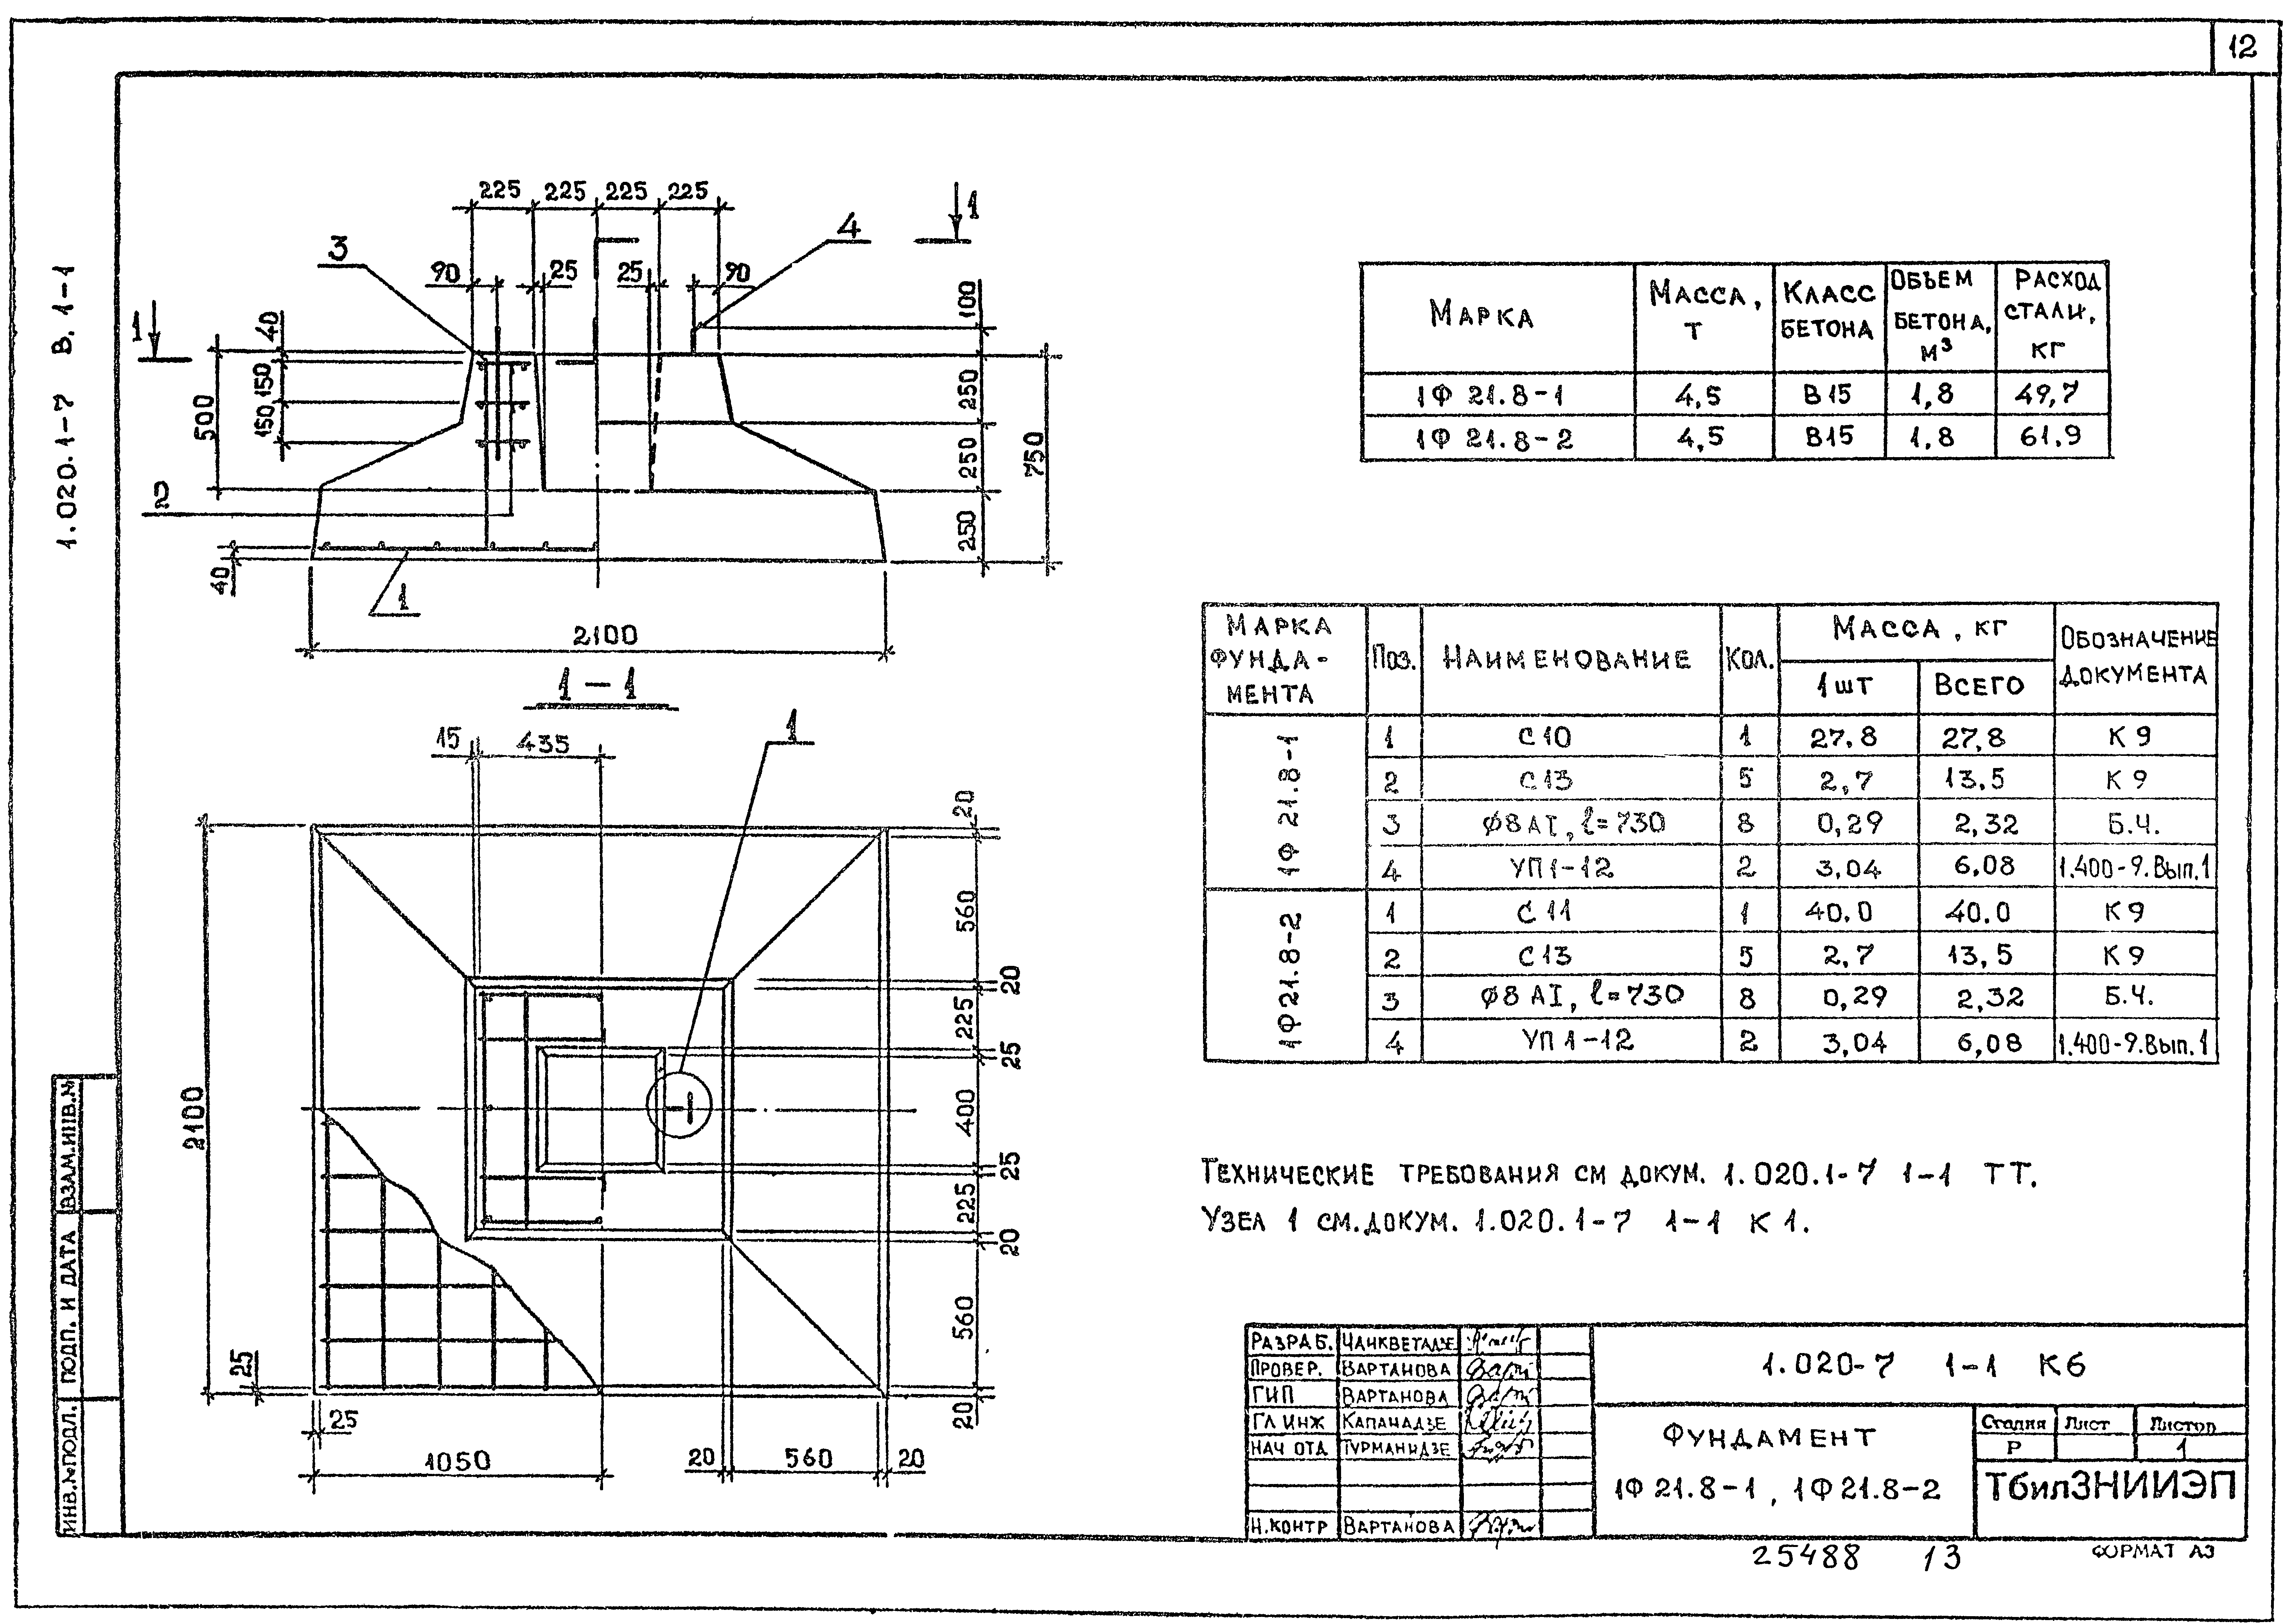 Ф 12-9-2 | фундаменты цельные под колонны серия 1.020.1-2с/89 — «астилс»